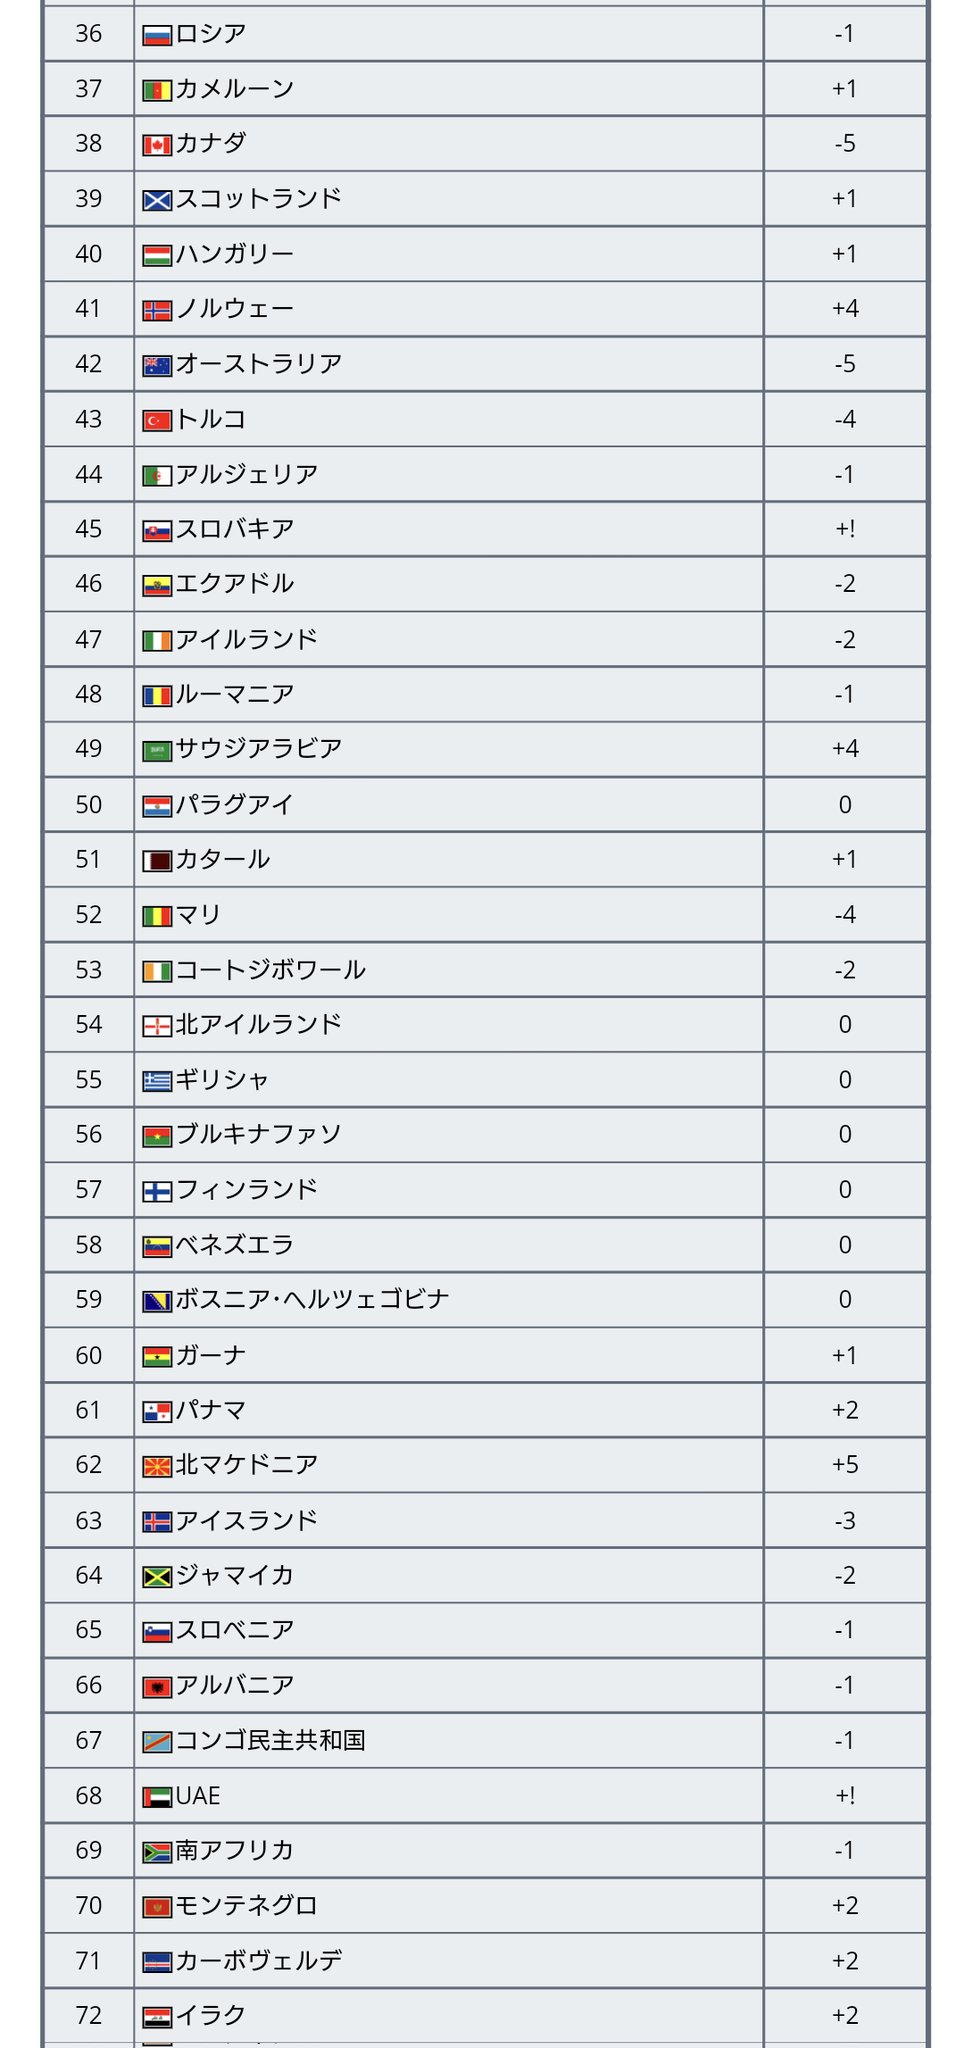 ワールドサッカー代表戦 Na Twitter 最新fifaランキングが発表 22 3 31発表 日本は前回と変わらず23位で アジア2位キープ 全体では 3年半首位をキープしてきたベルギーが2位となり 変わってブラジルが首位に T Co Pz8sxifyv3 Twitter